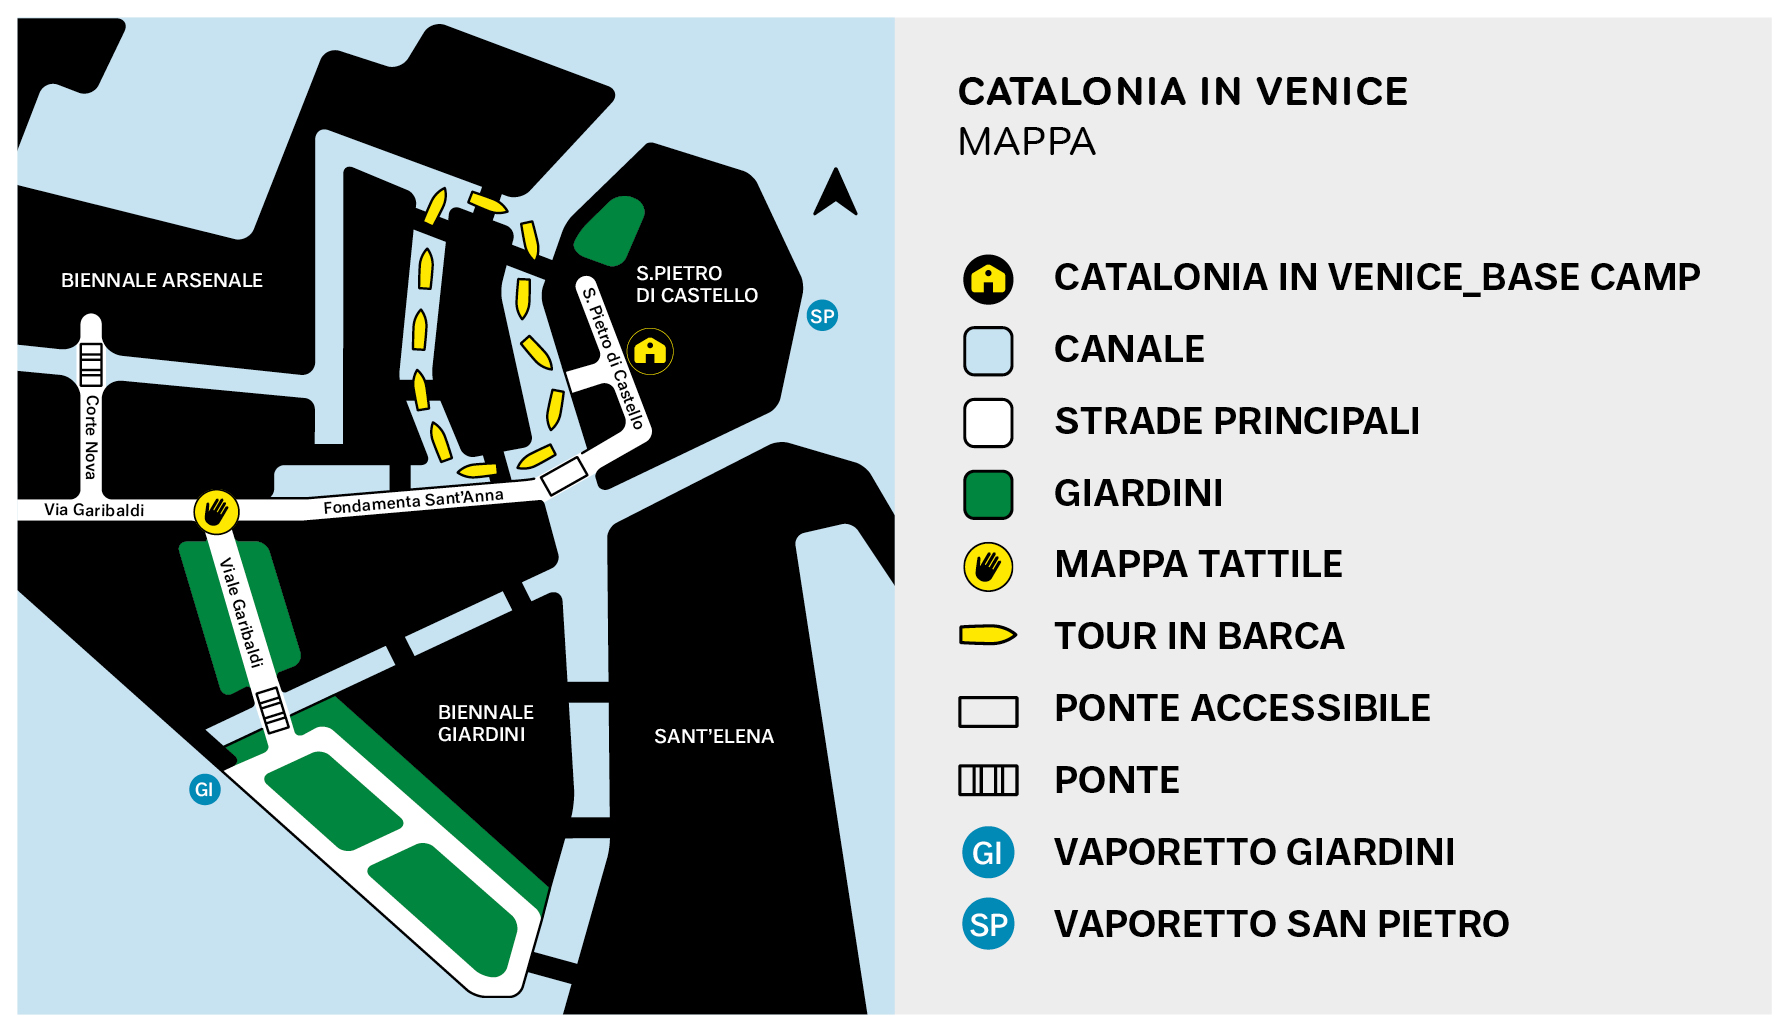 Mappa d'accesso al campo base. Il campo base si trova accanto a San Pietro di Castello